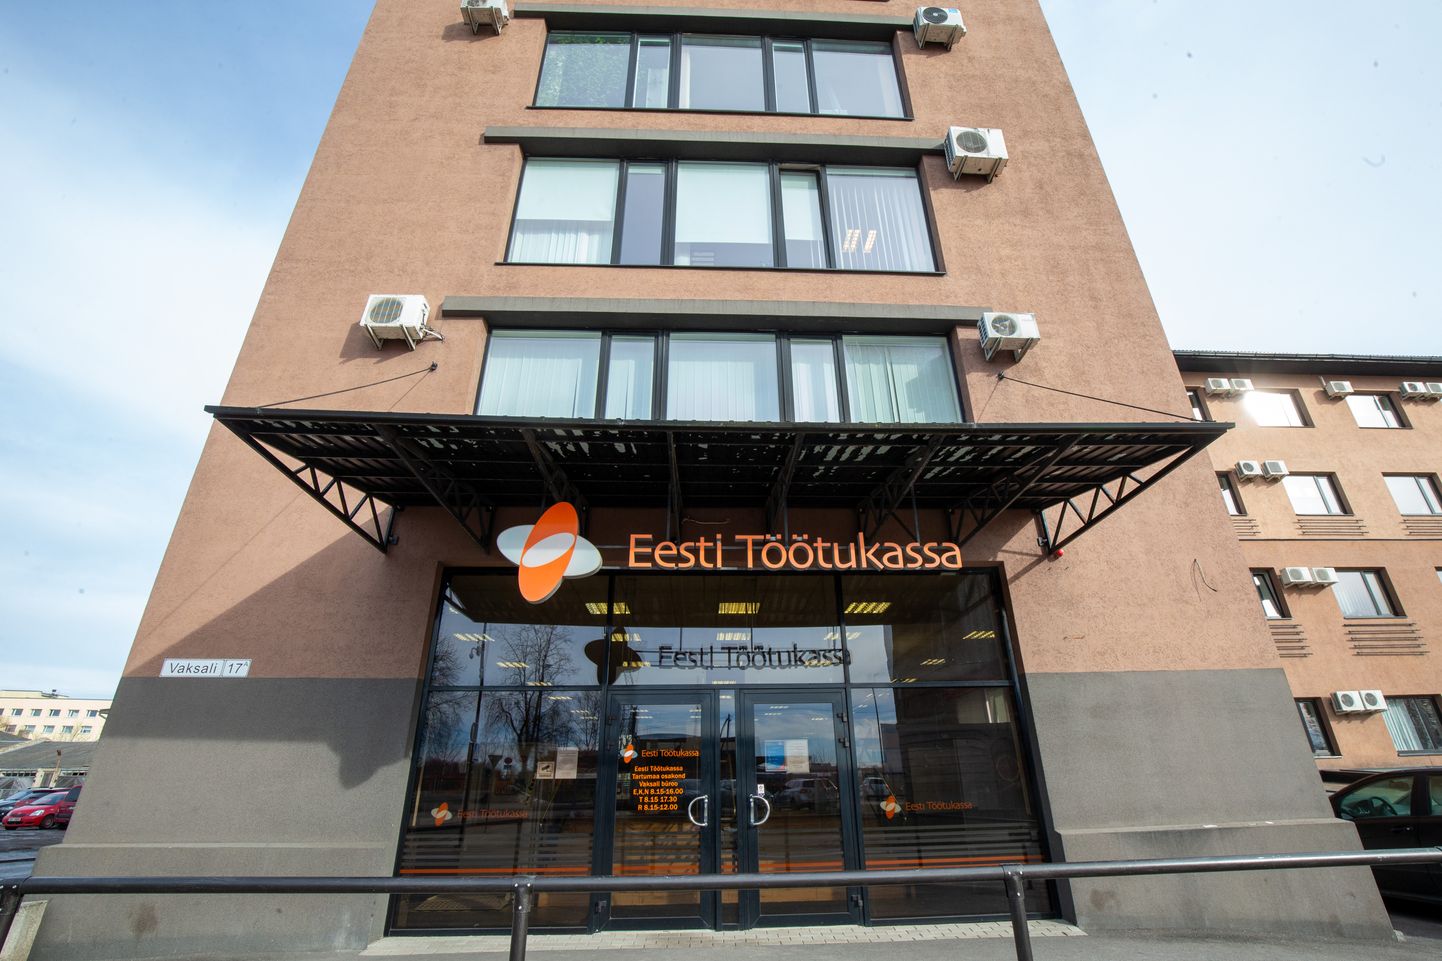 Töötukassa Tartu üks büroodest asus Vaksali 17a aadressil 2011. aastast, kuid paari nädala pärast sulgeb see kontor uksed.